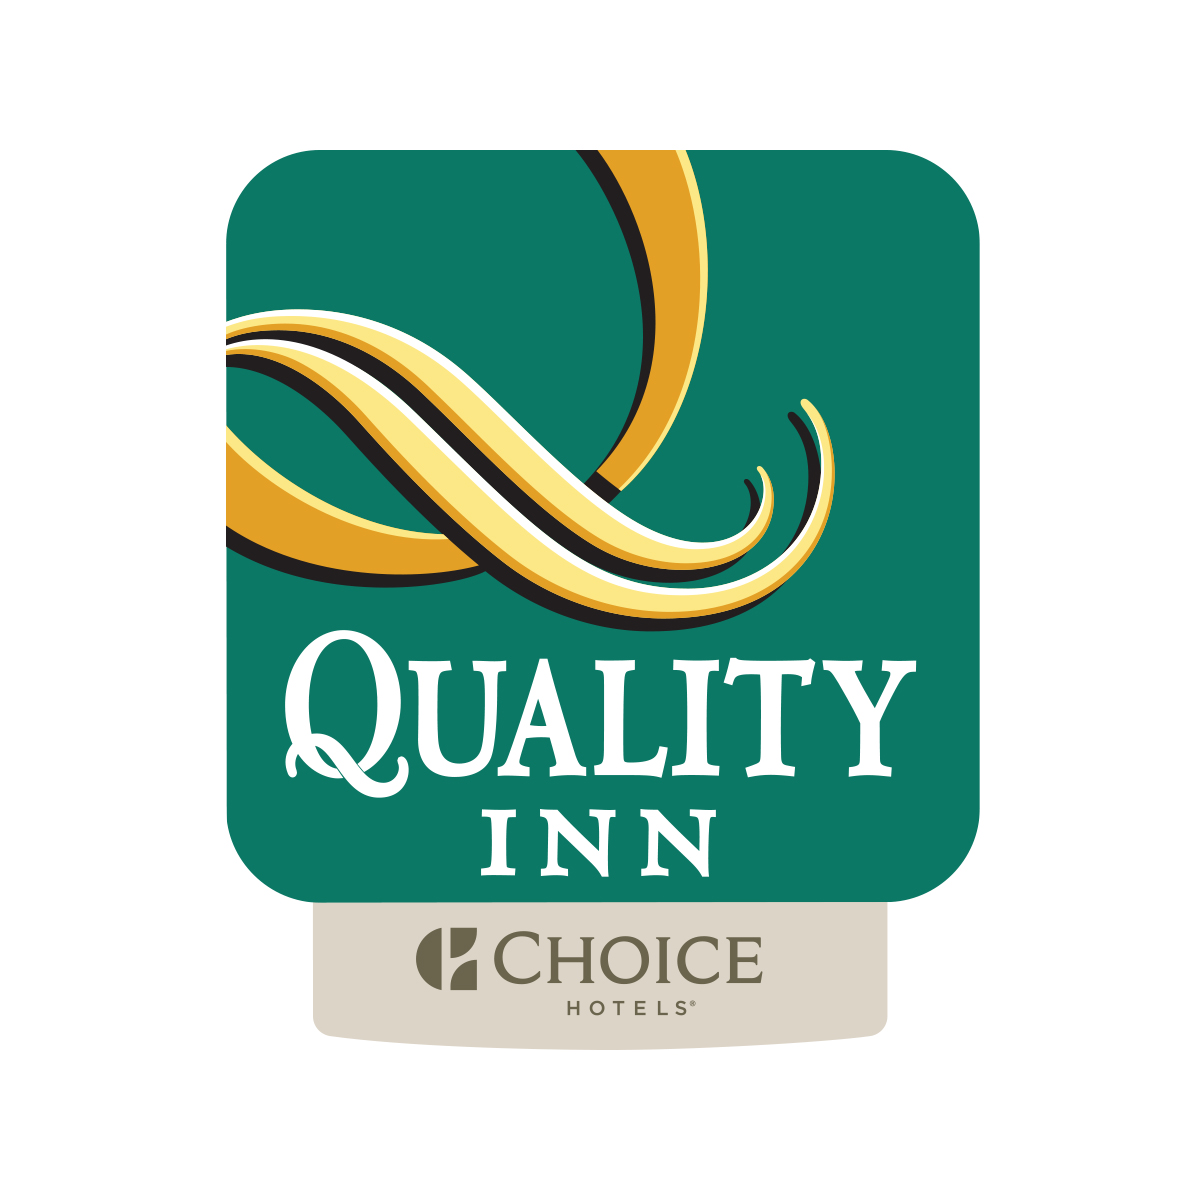 Quality Inn 2019 SMCB Logo.jpg